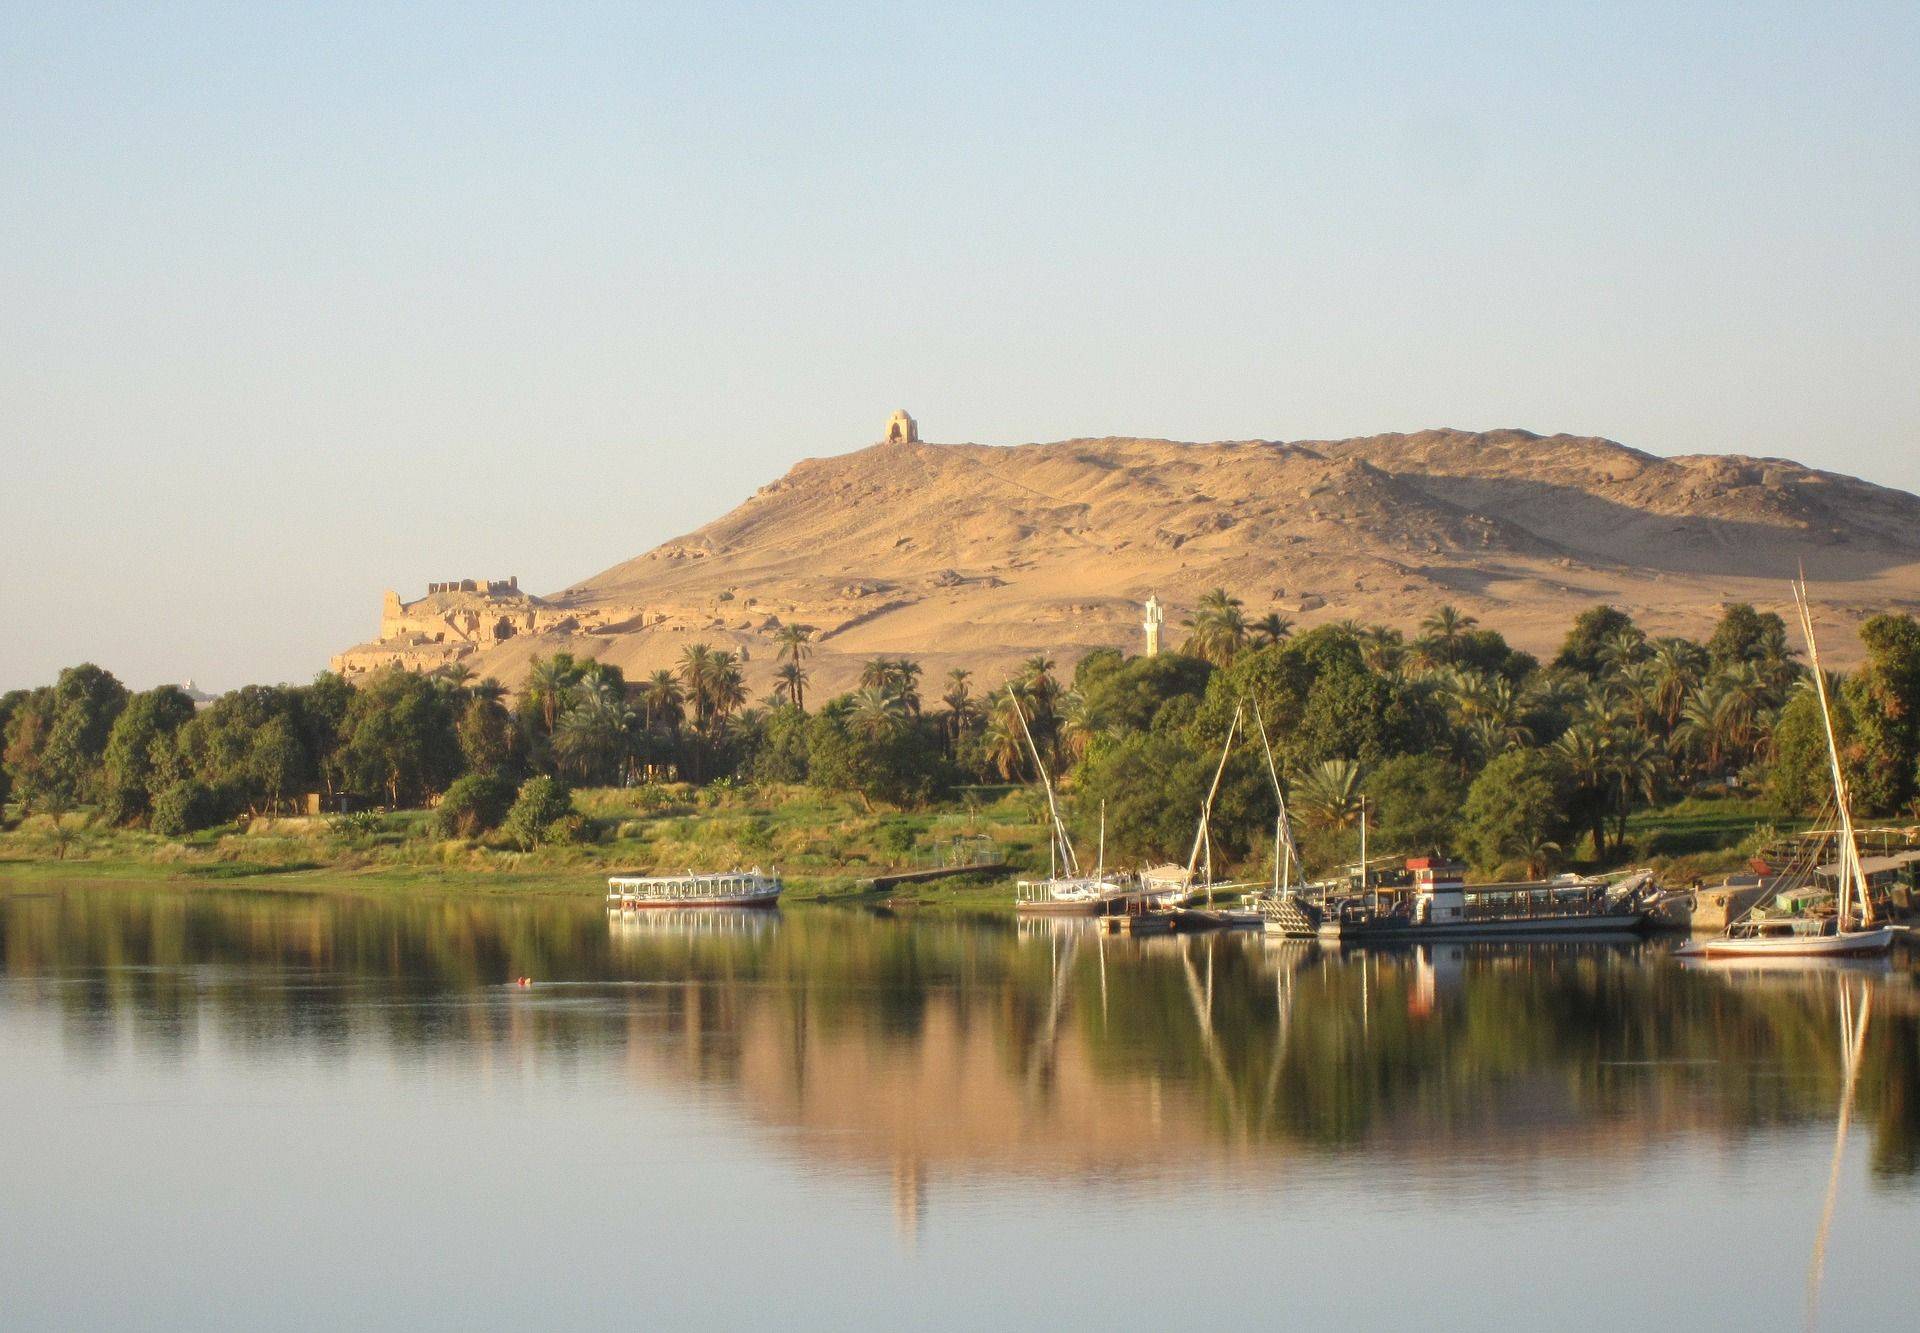 Navigare sul Nilo alla scoperta della terra dei faraoni